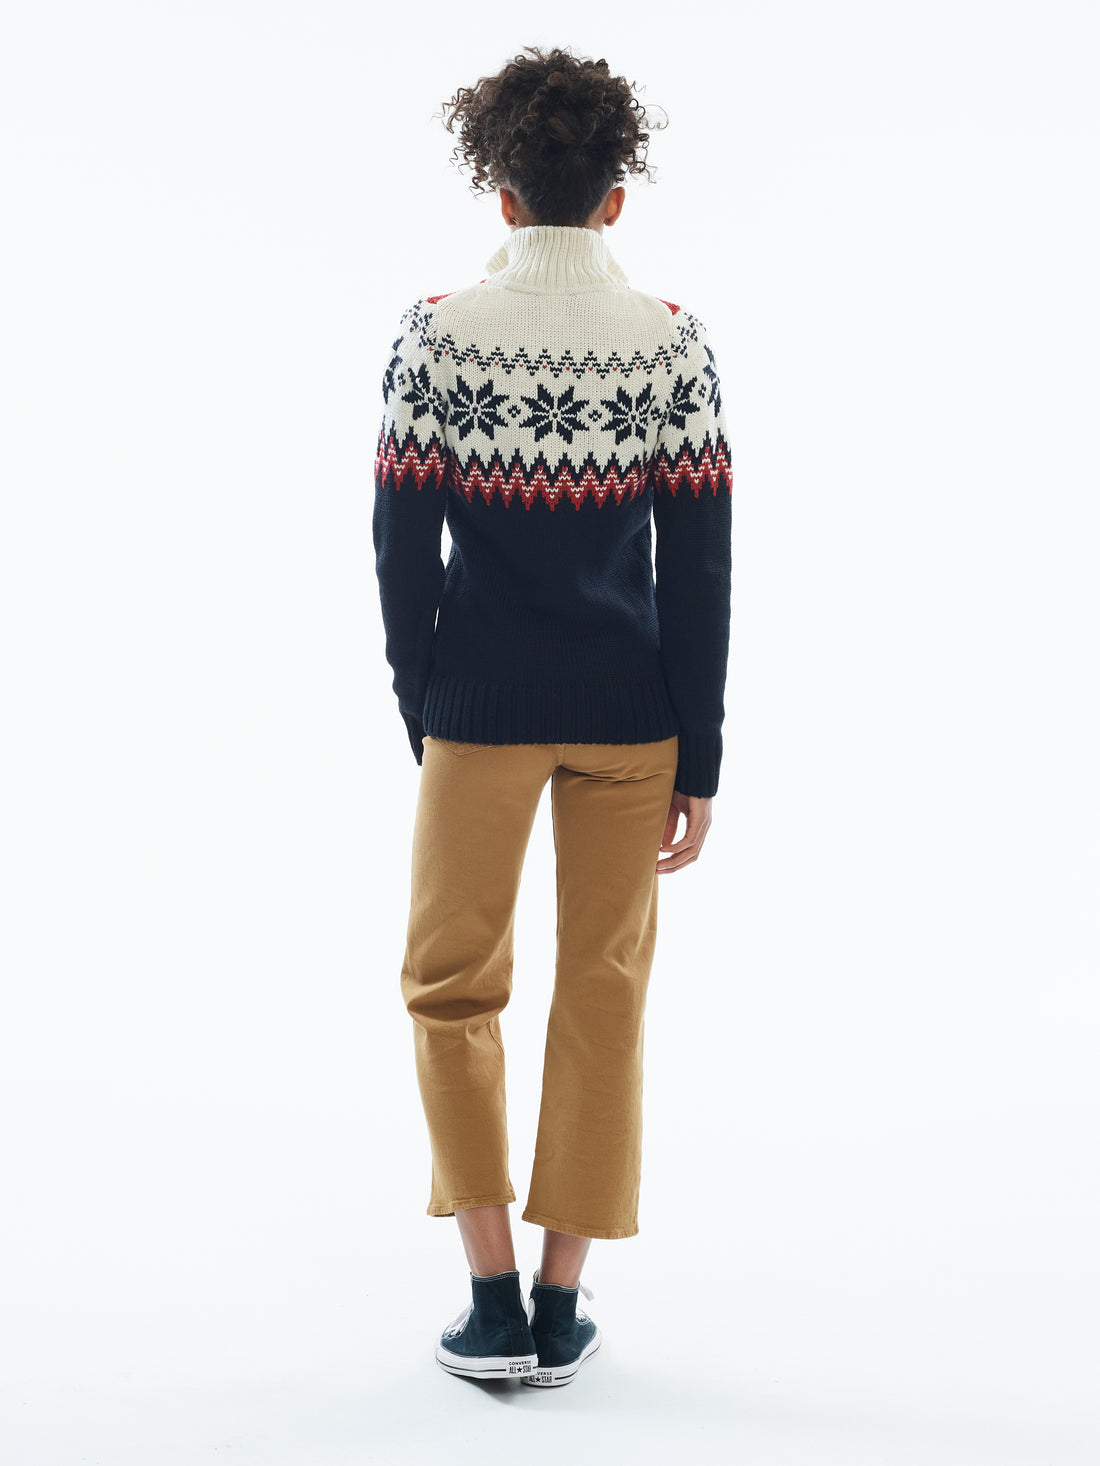 Dale of Norway - Myking Women's Sweater